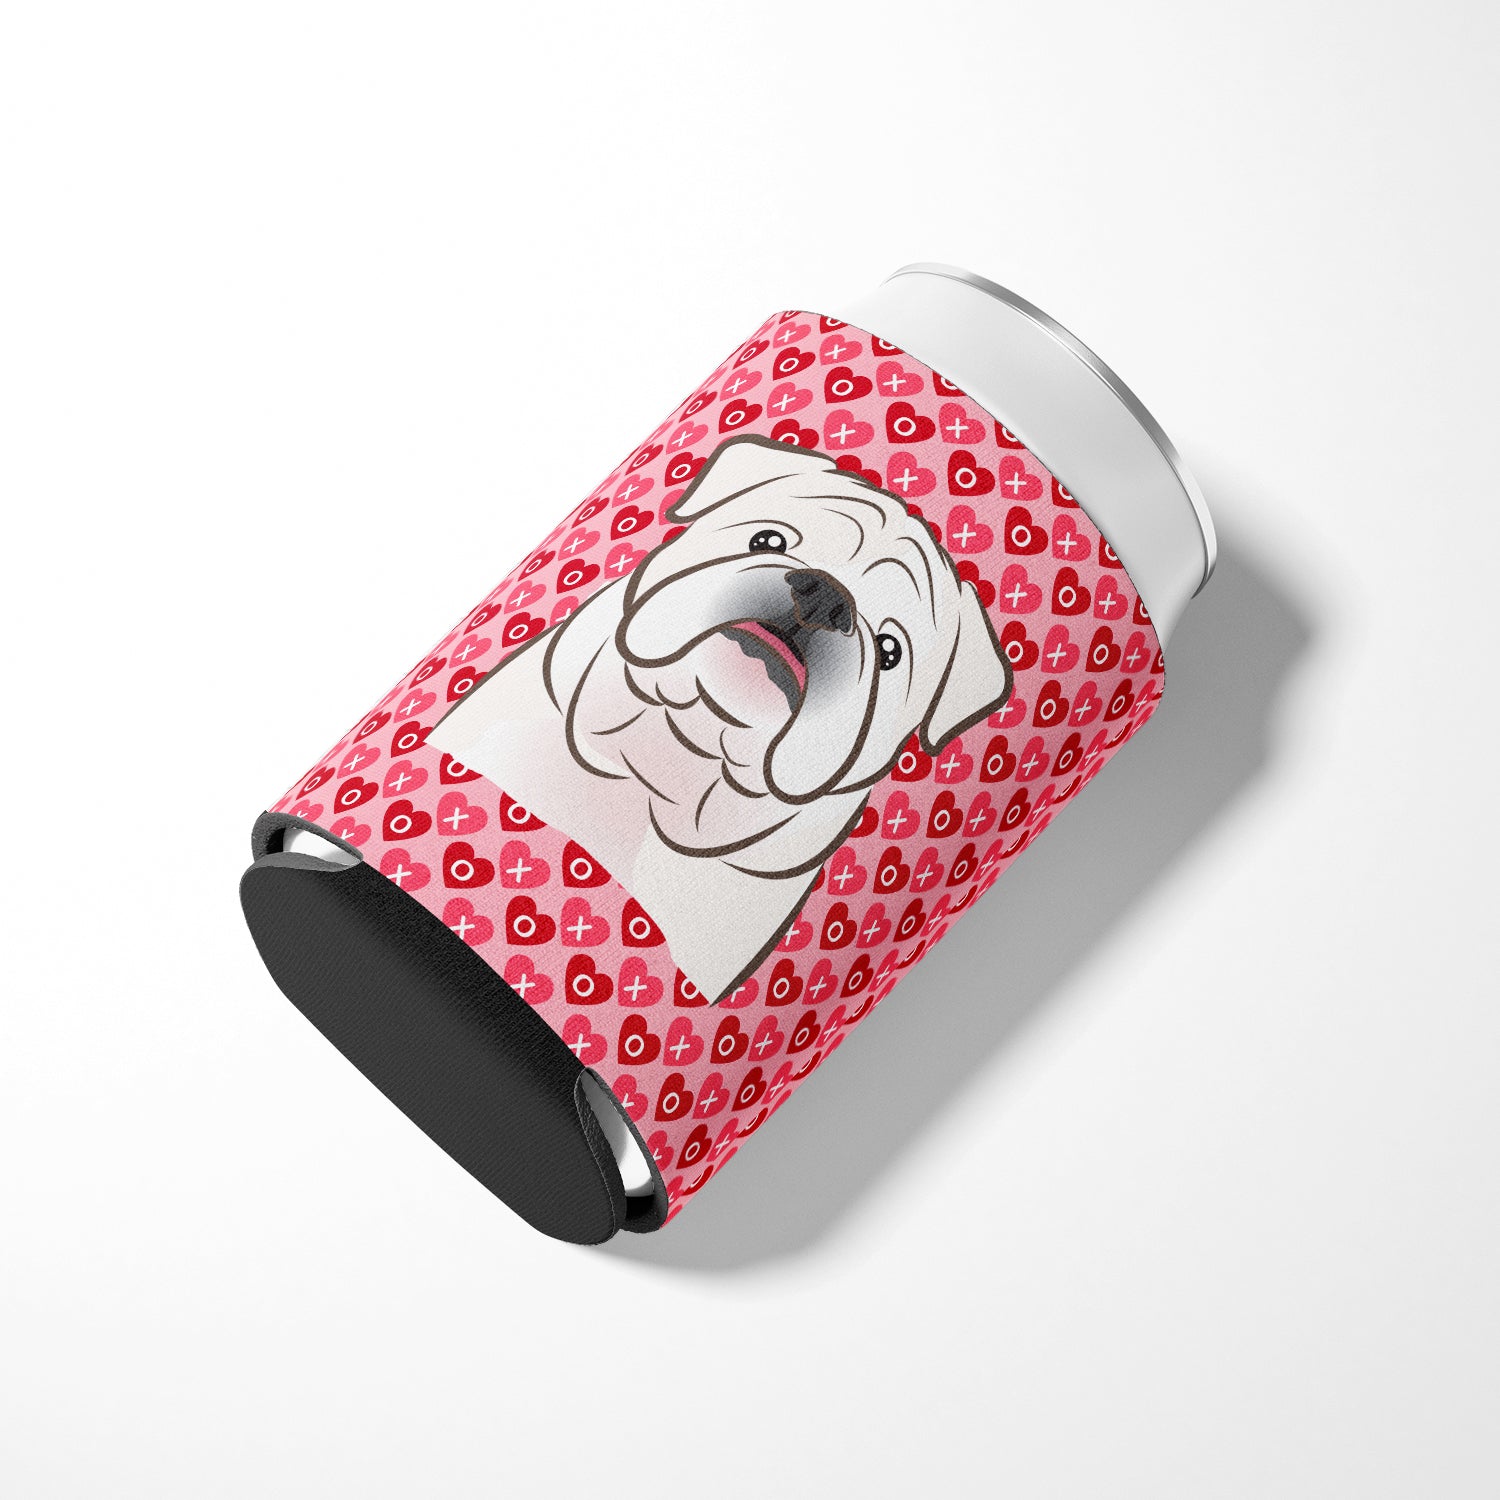 White English Bulldog  Hearts Can or Bottle Hugger BB5290CC